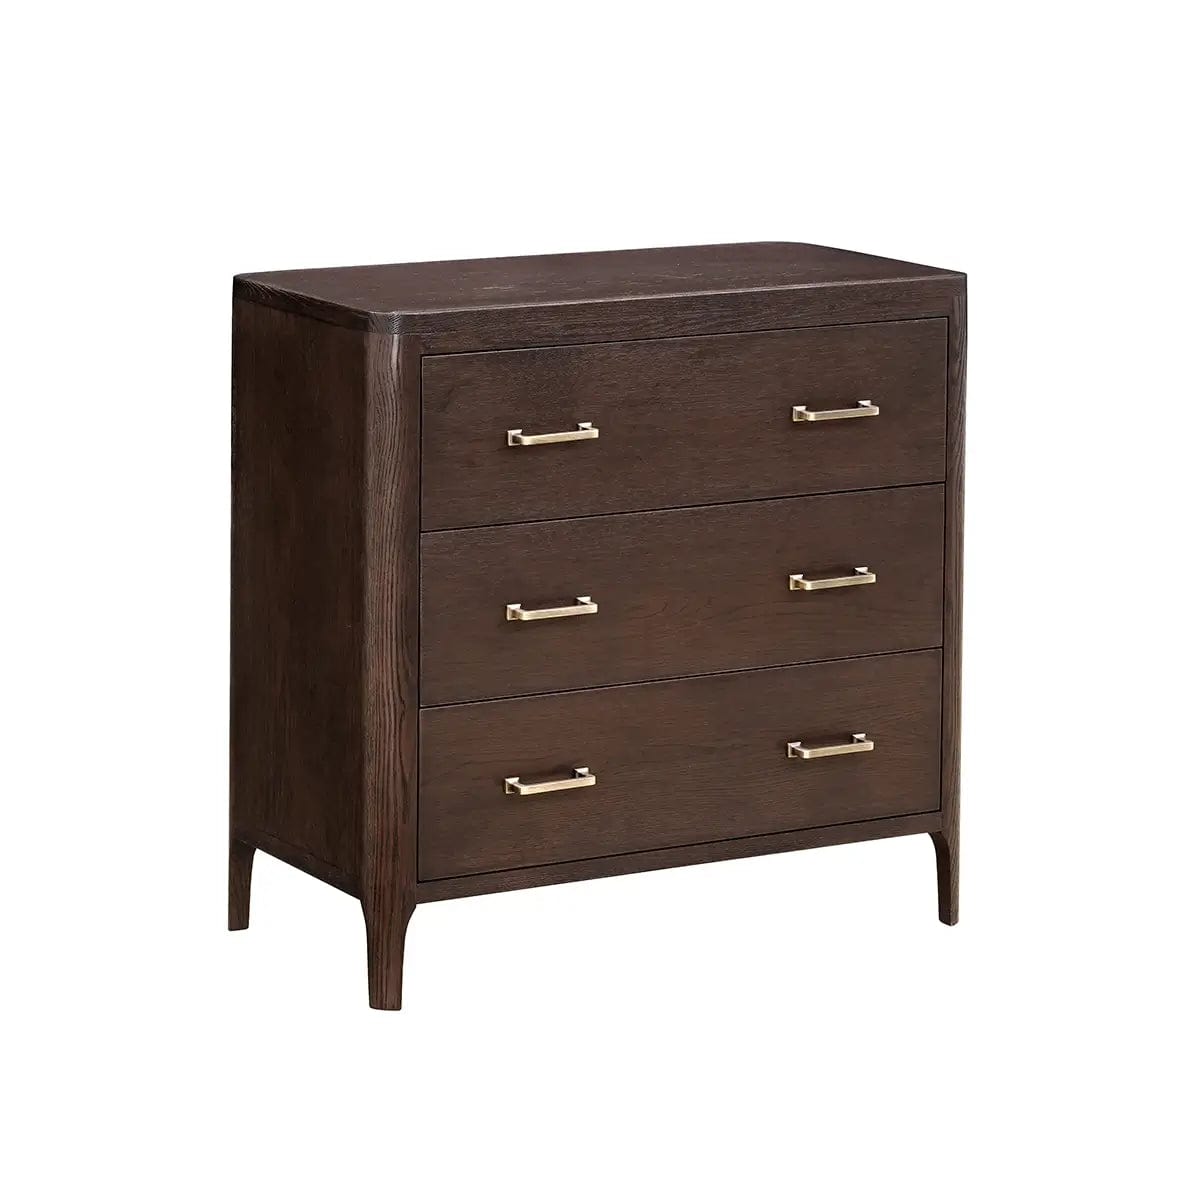 Eccotrading Design London Living Hudson 3 drawer chest brushed brown oak House of Isabella UK